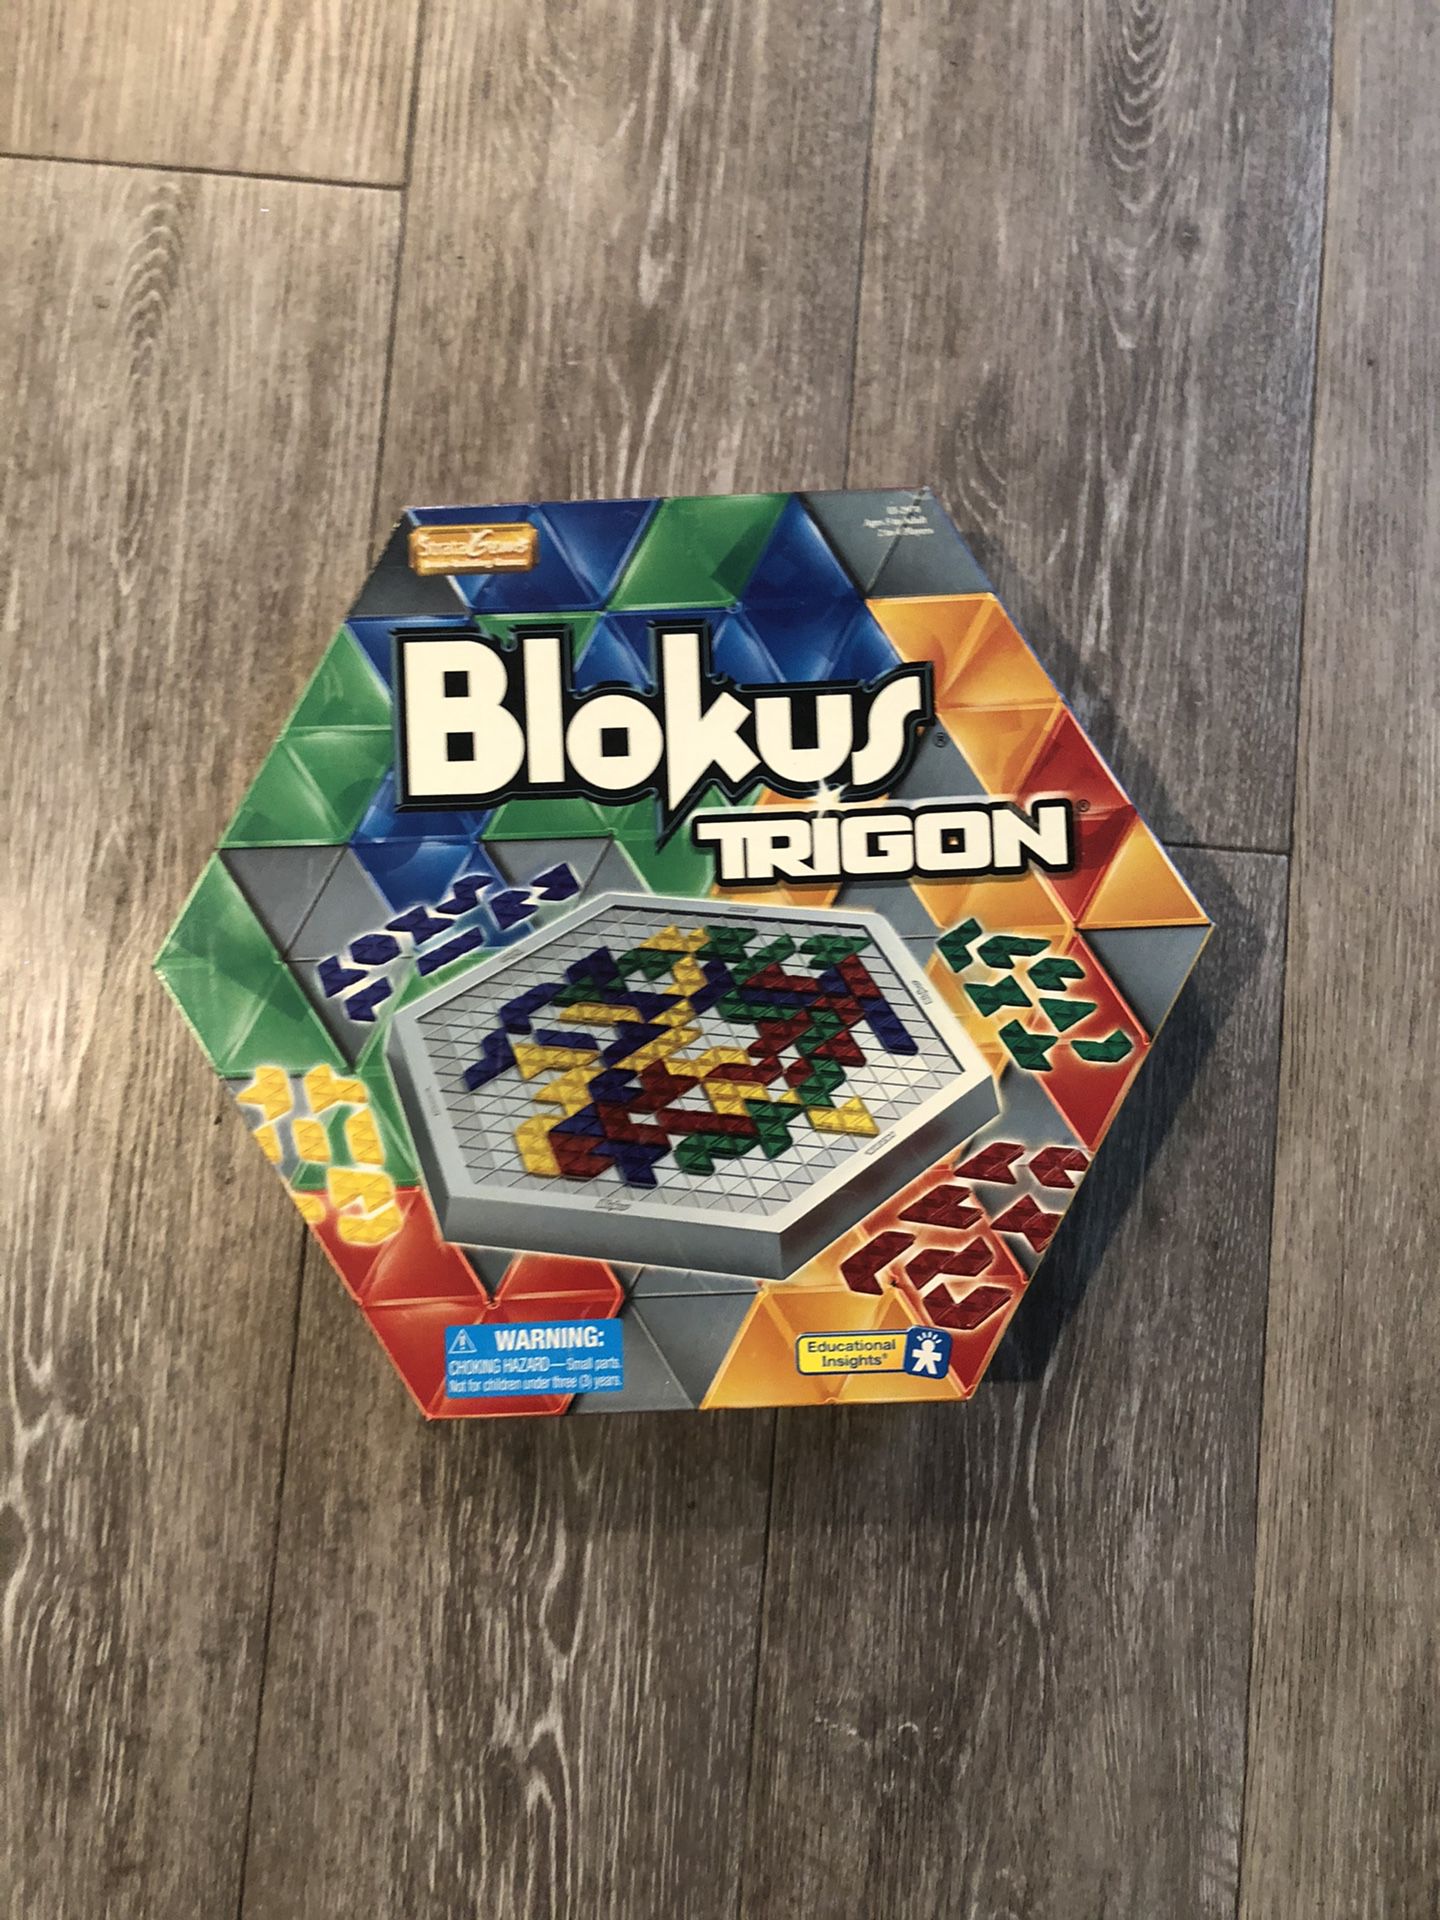 Blokus Trigon board game